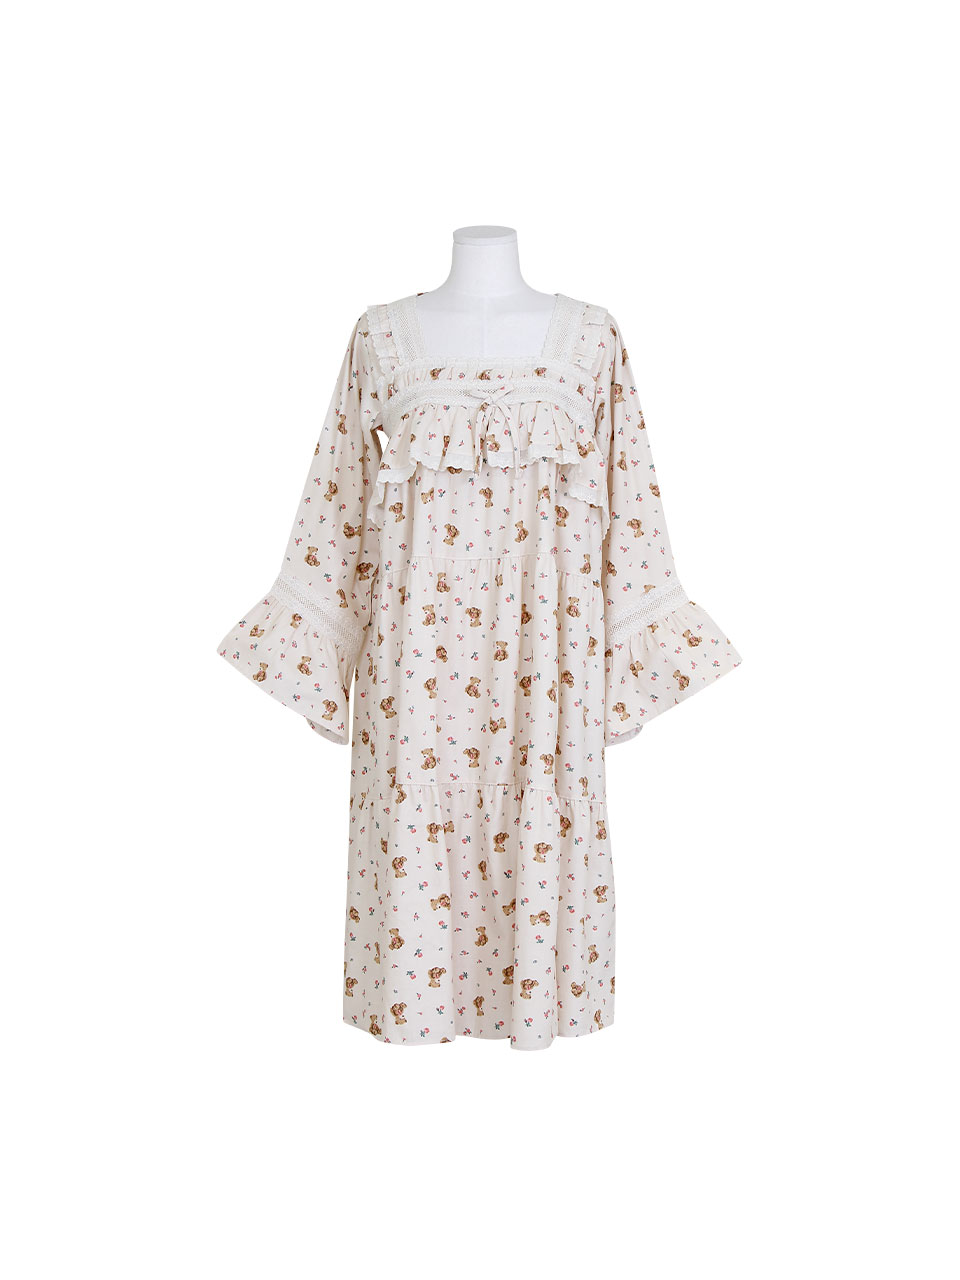 솔티ops 플라워베어 포근 러블리 레이스 원피스 파자마 홈웨어 잠옷 드레스